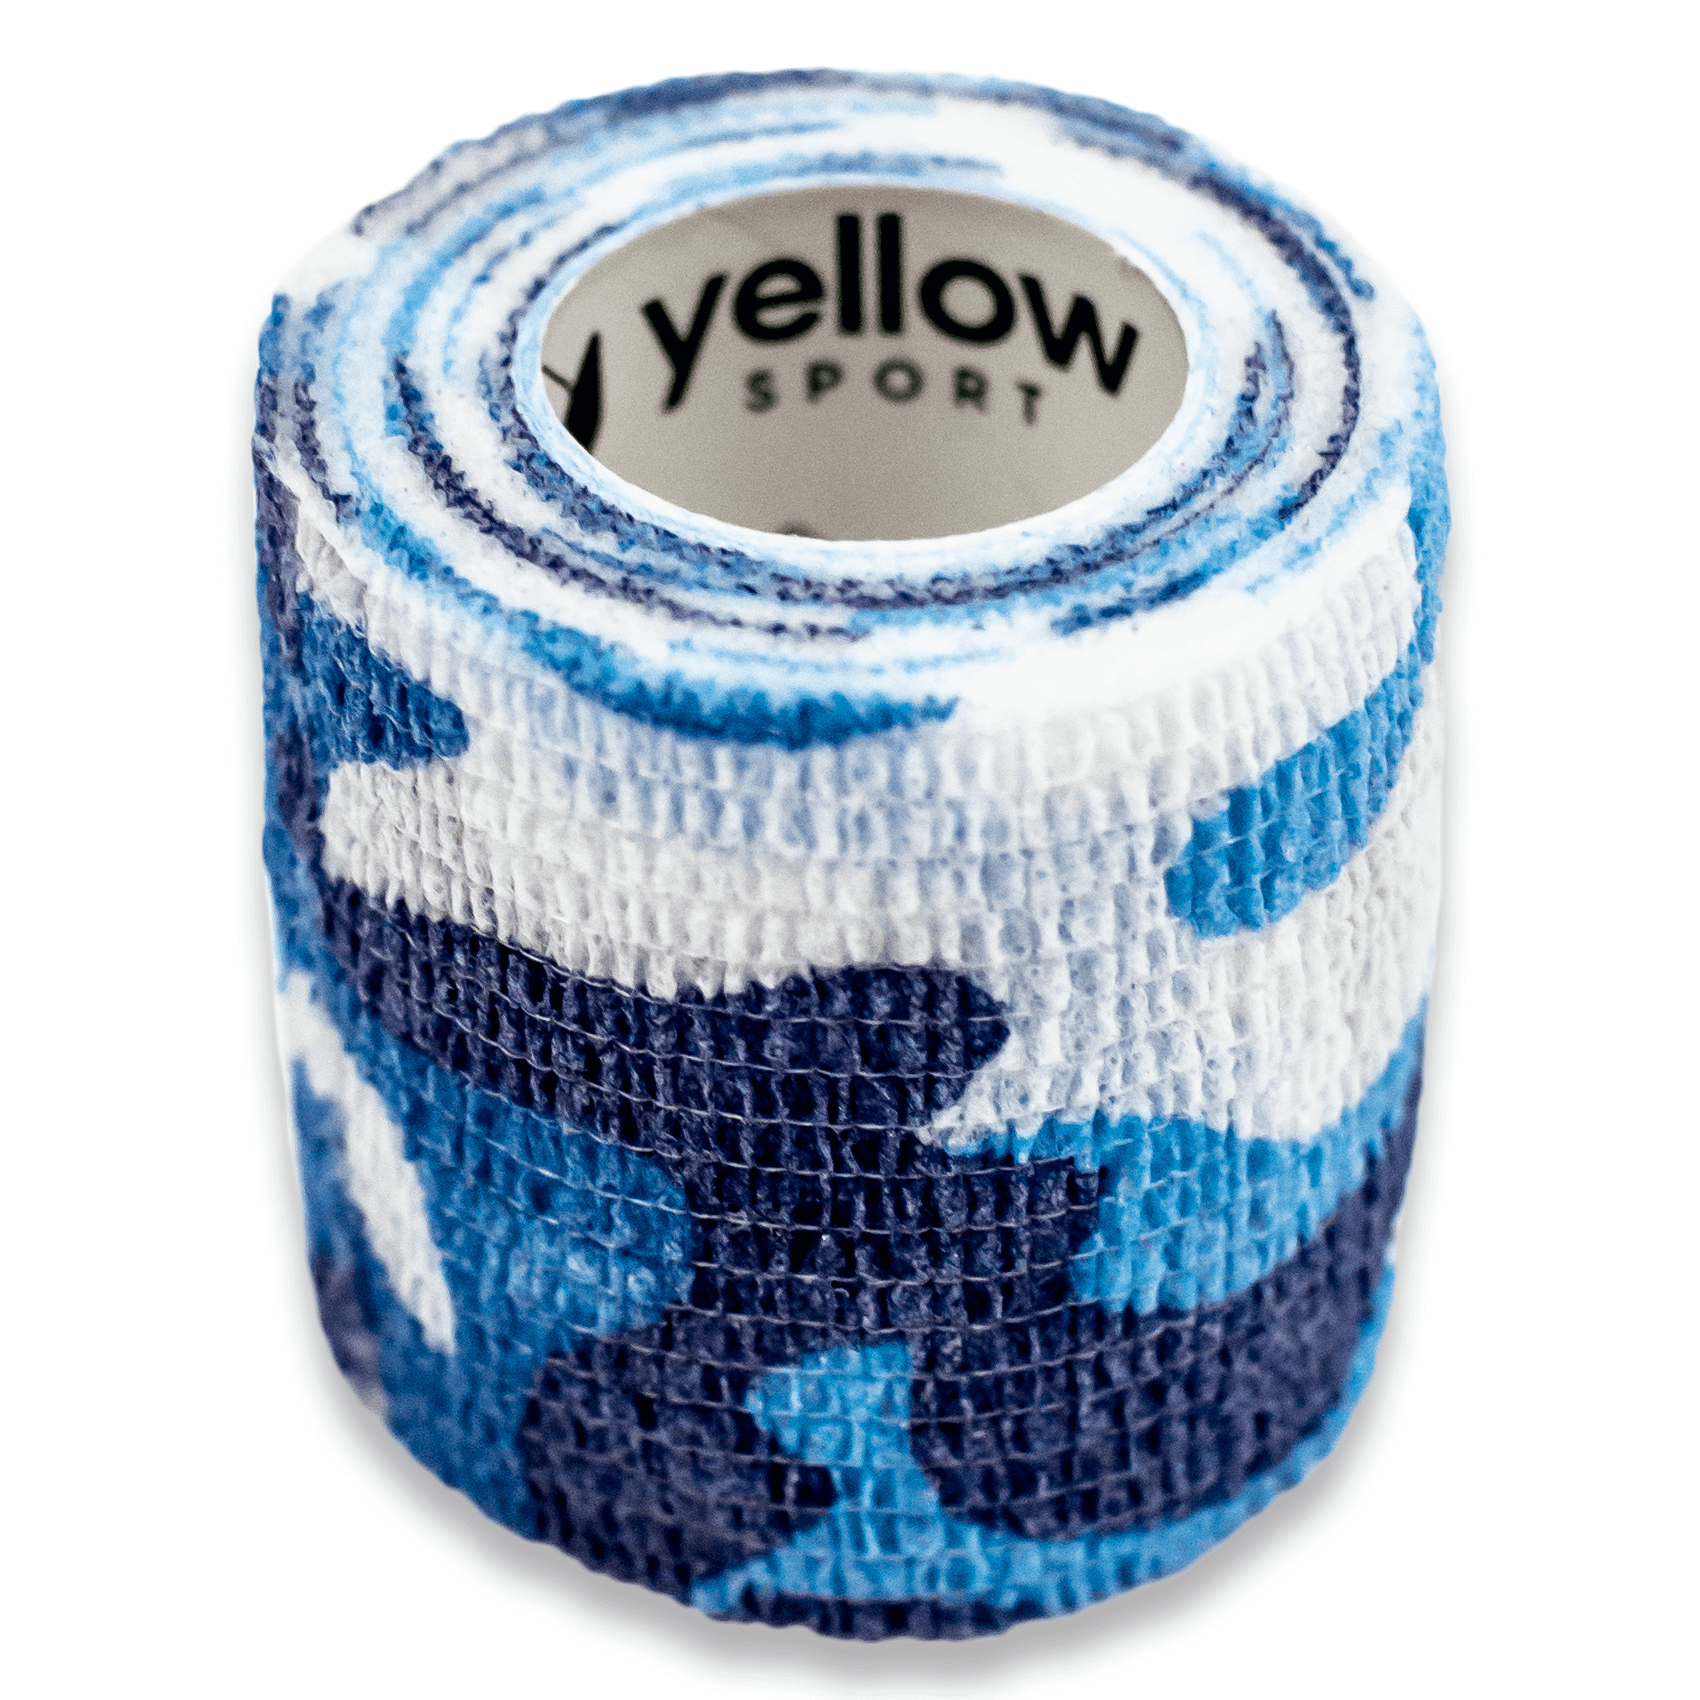 Bandaż kohezyjny yellowBAND - 5cm x 4,5m, niebieski moro